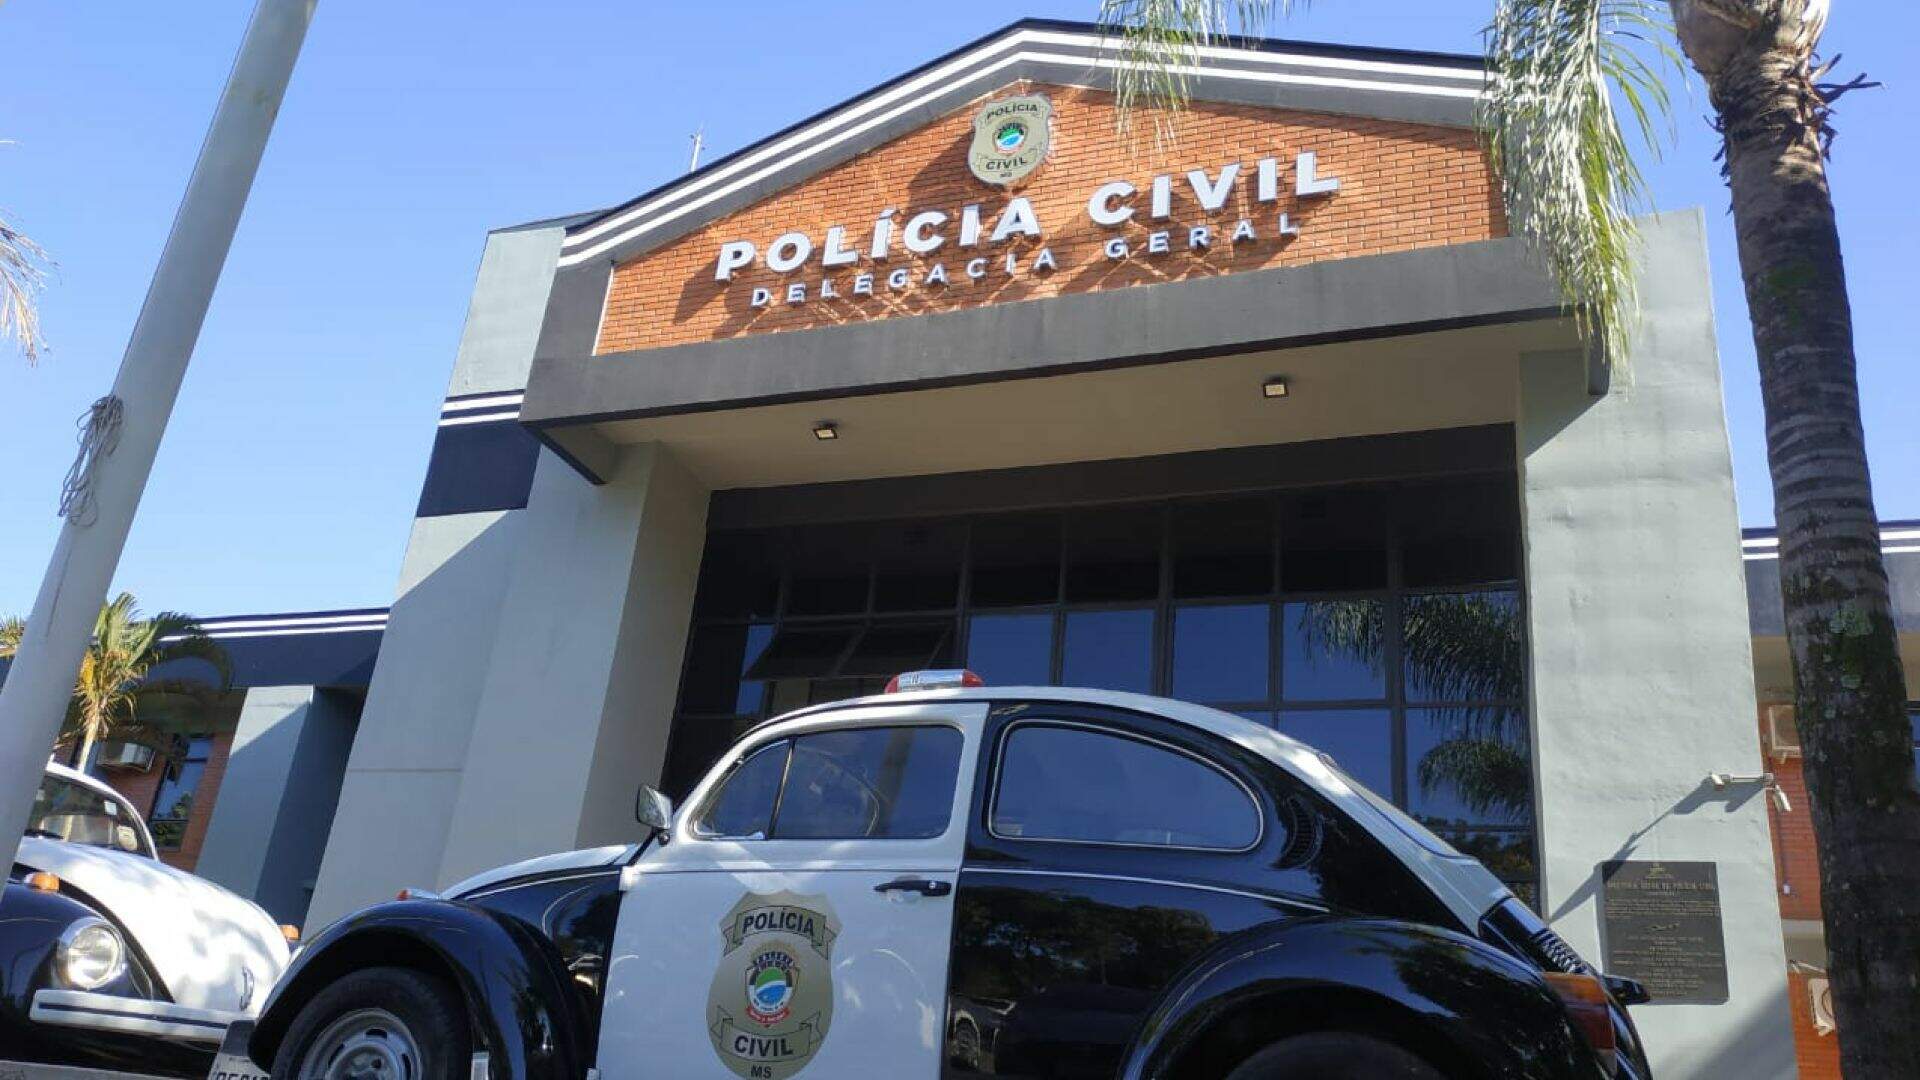 Polícia Civil de Mato Grosso do Sul divulga calendário de correição nas delegacias em 2023